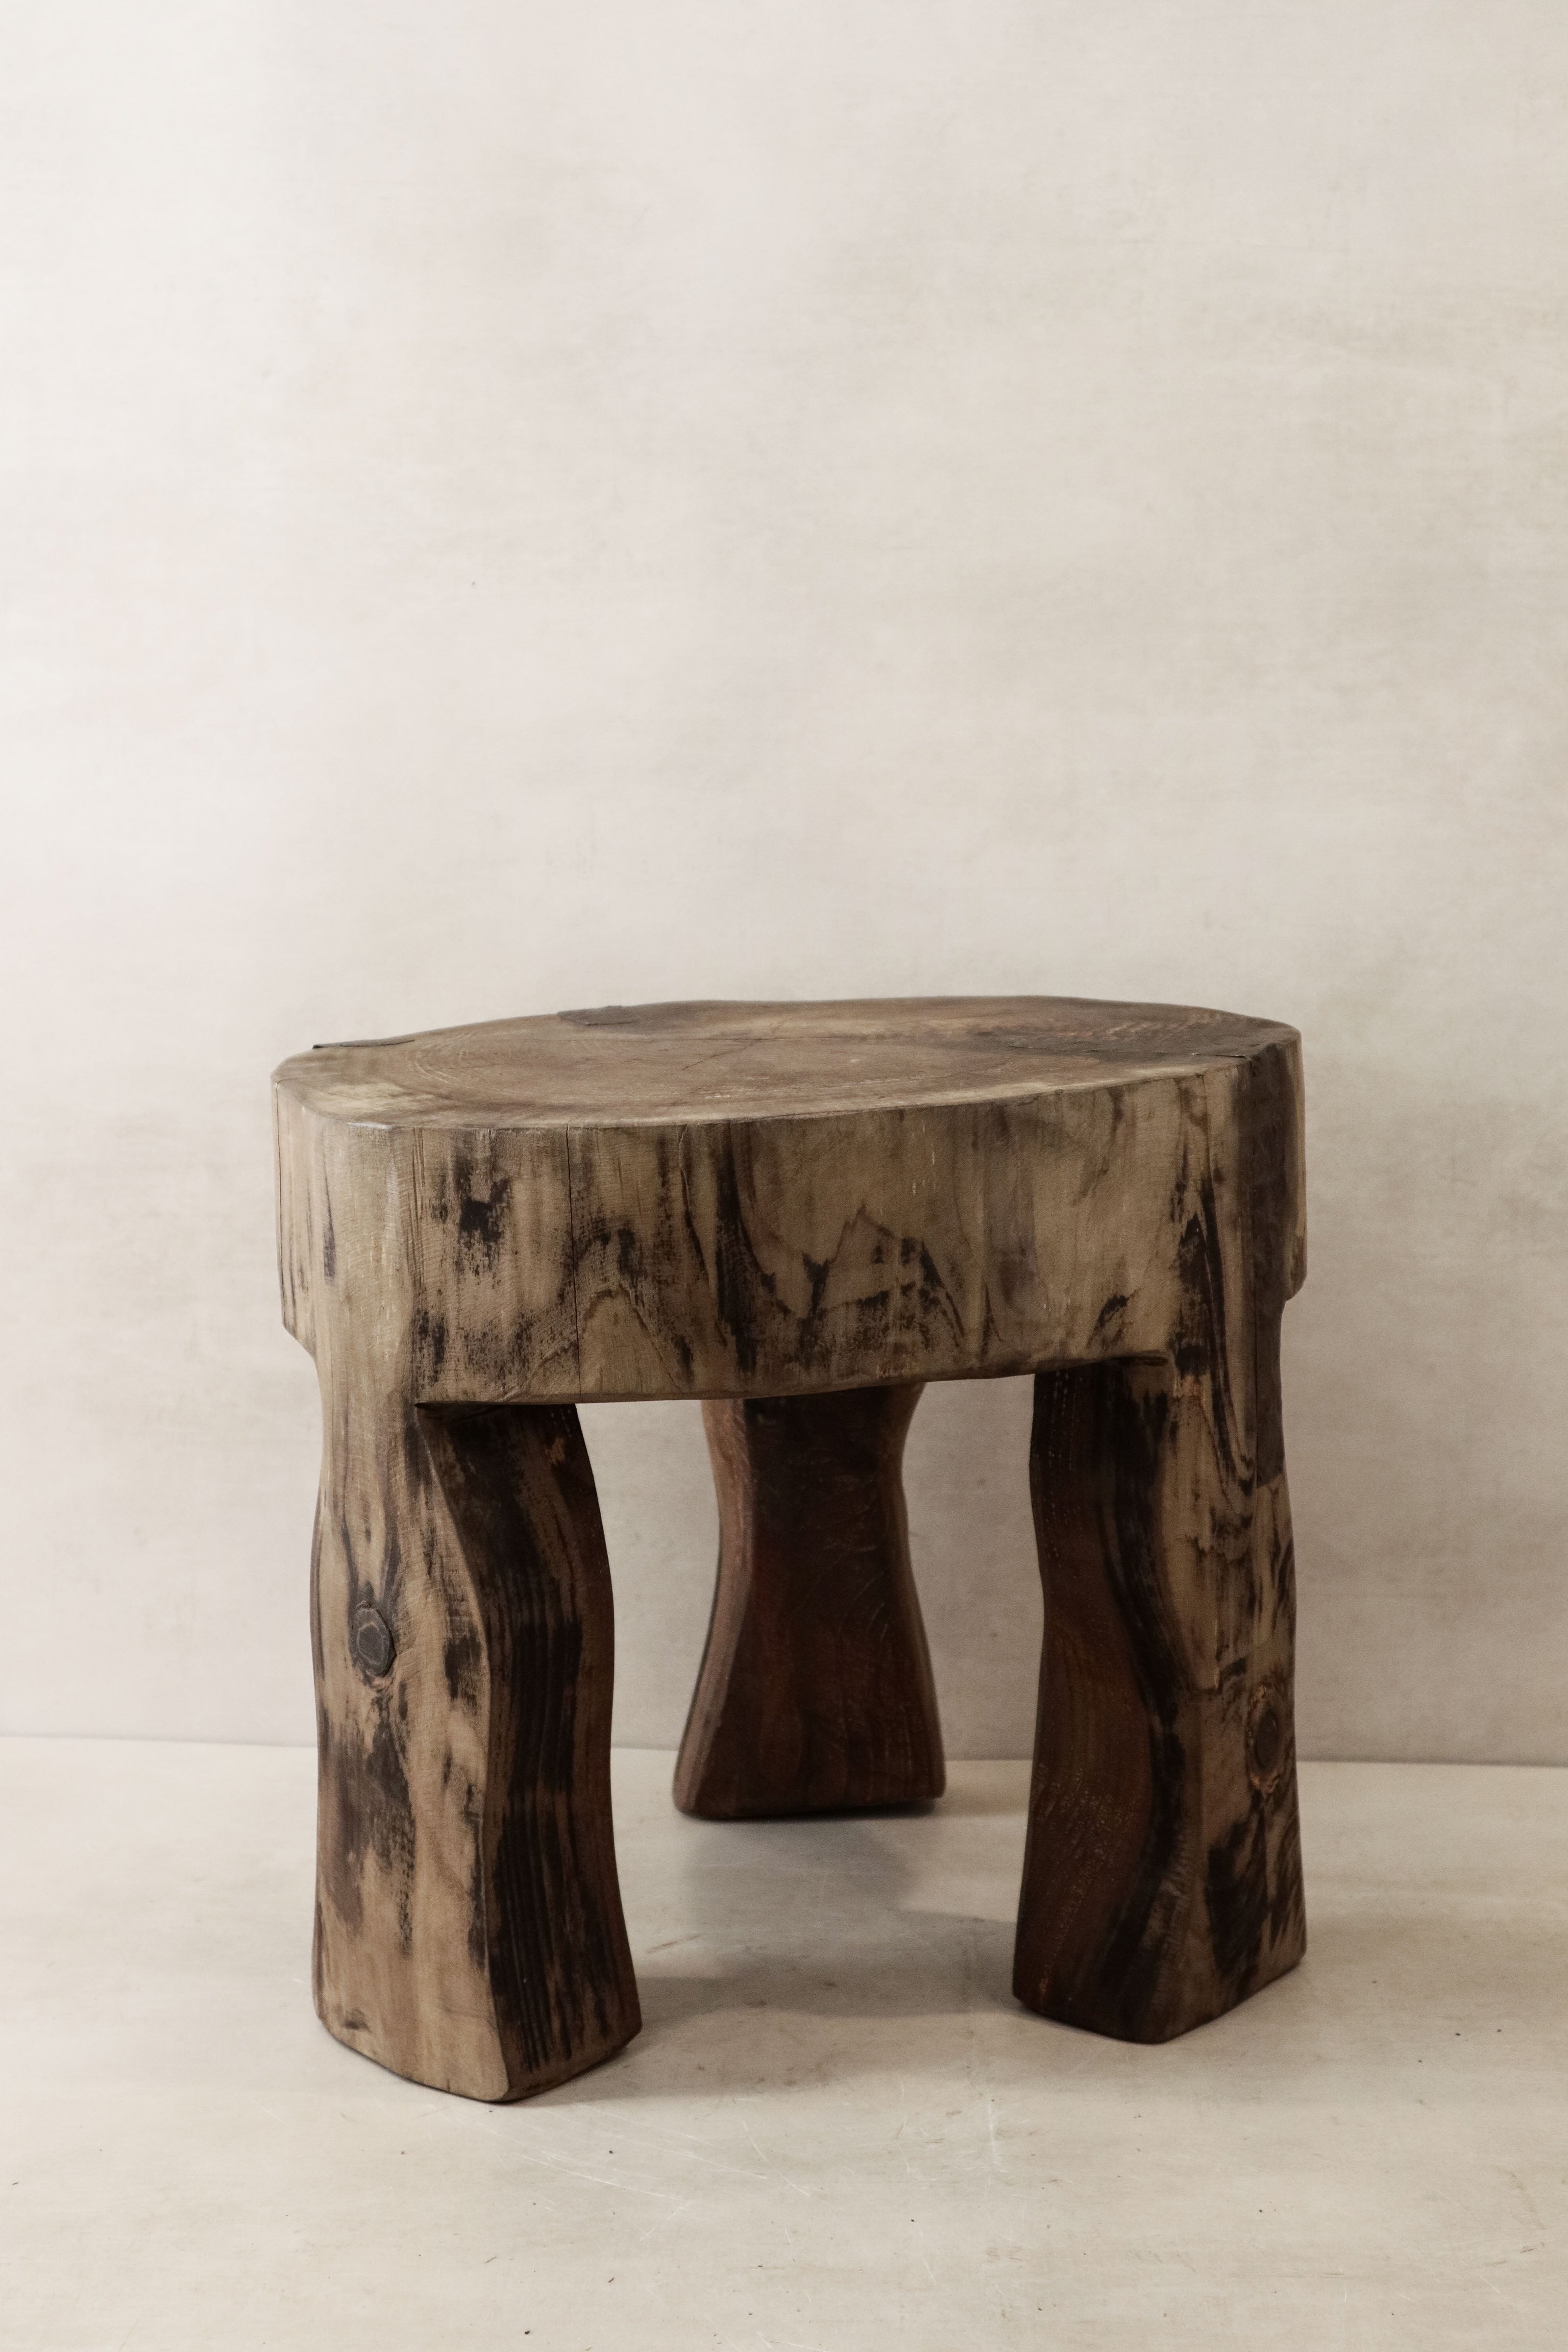 botanicalboysuk Hand Carved Wooden Stool\Side Table - 48.1